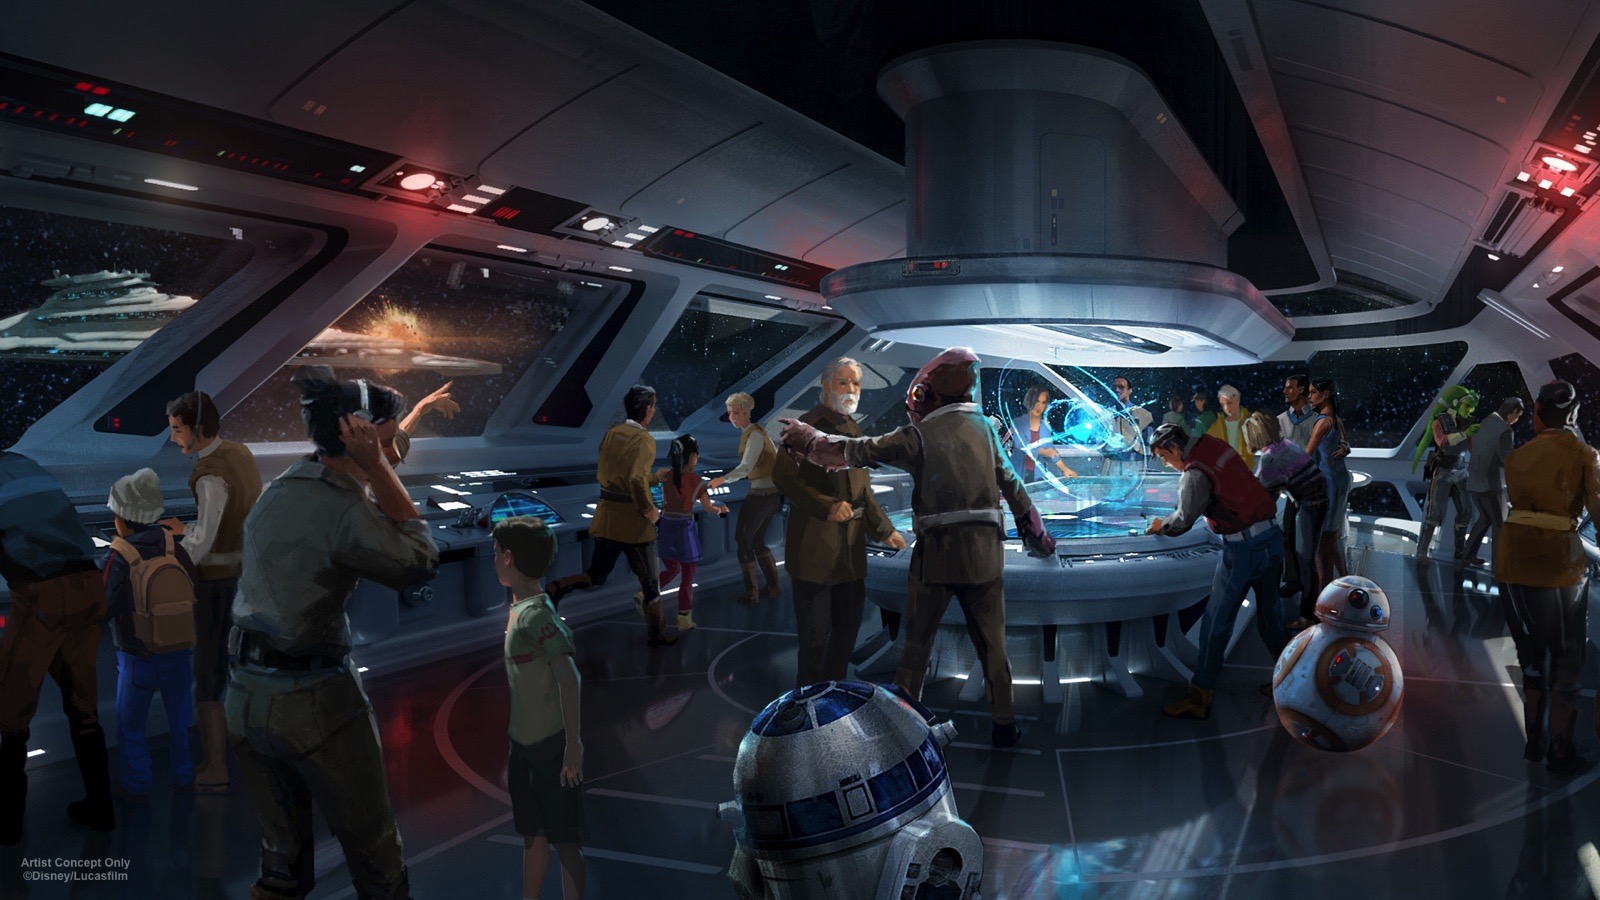 Disney's immersive 'Star Wars' hotel is a Jedi dream come true